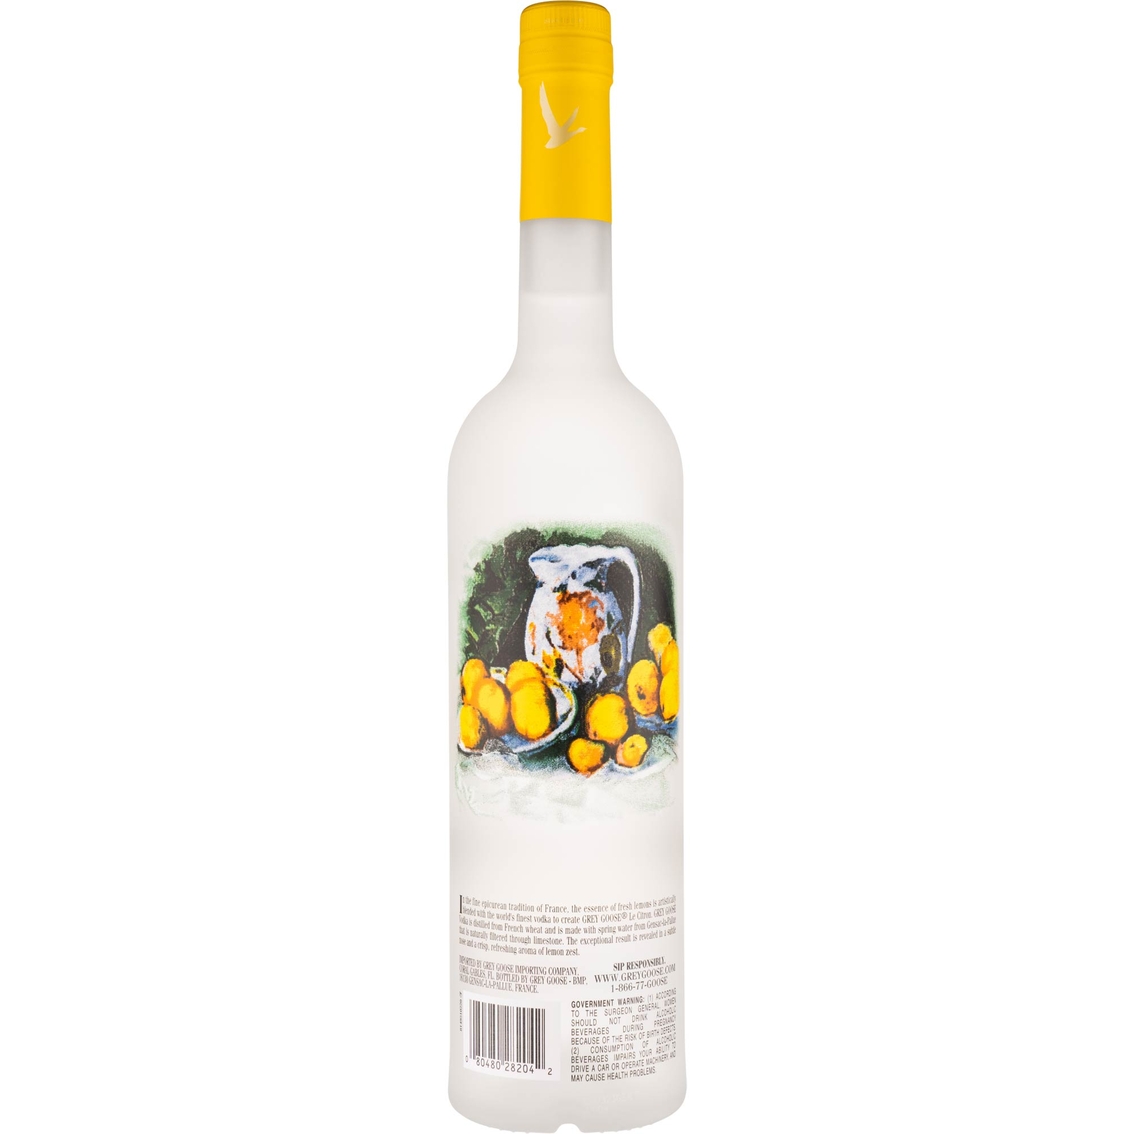 Grey Goose Le Citron Vodka 750ml - Image 2 of 2